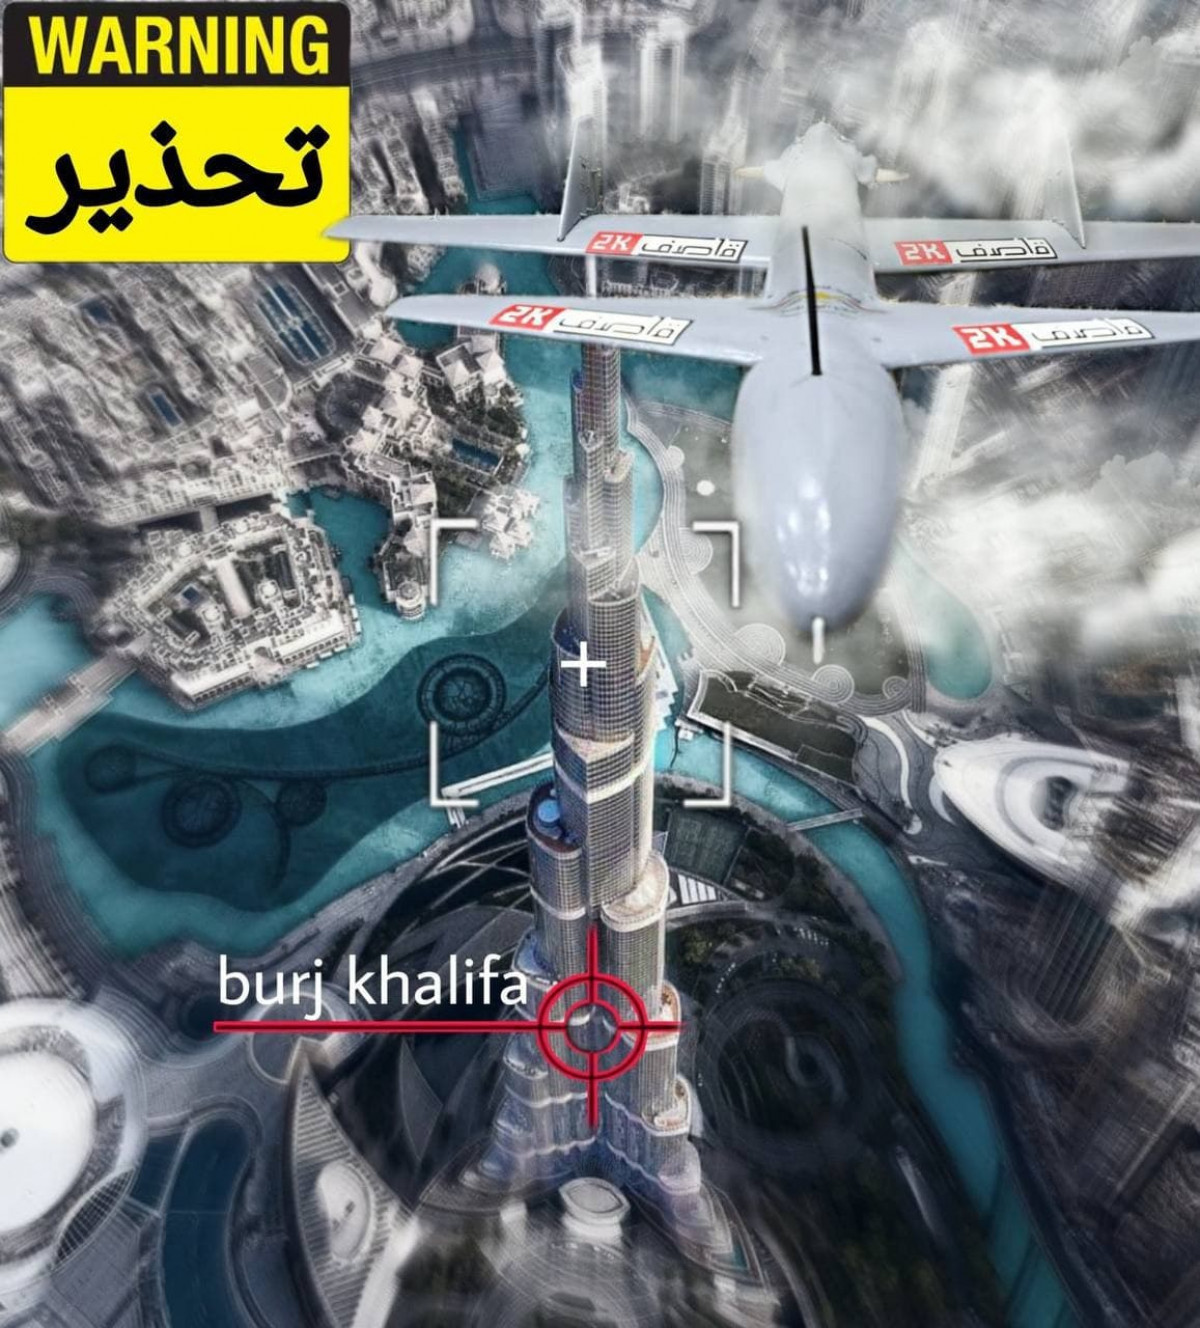 انصارالله از ساکنين برج خلیفه دوبي و اطراف آن می خواهد که فوراً محل را ترک کنند